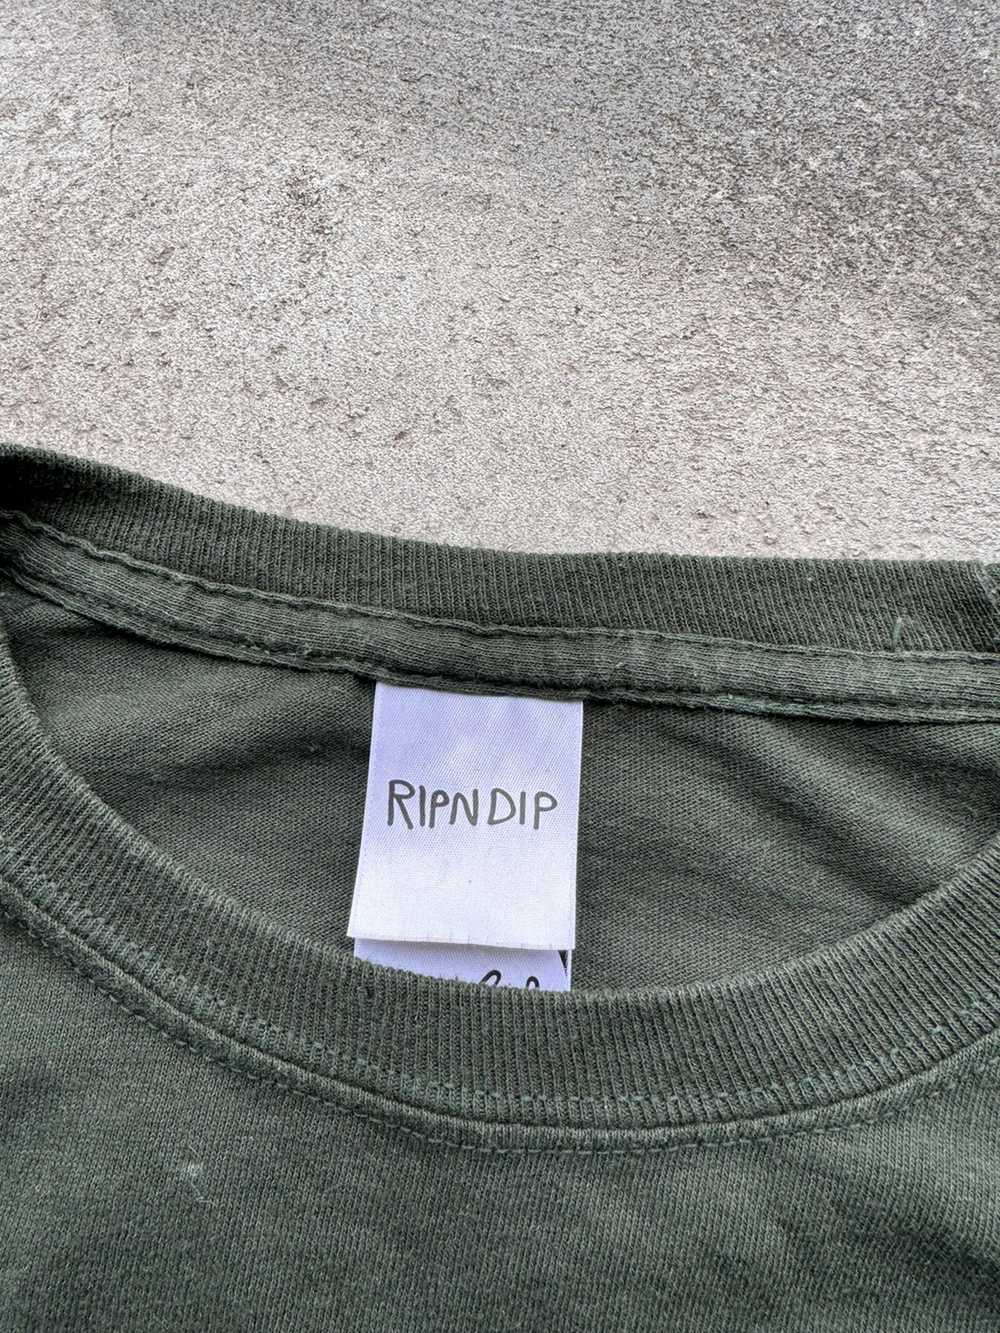 Rip N Dip × Streetwear RipNDip Must Be Nice Skate… - image 6